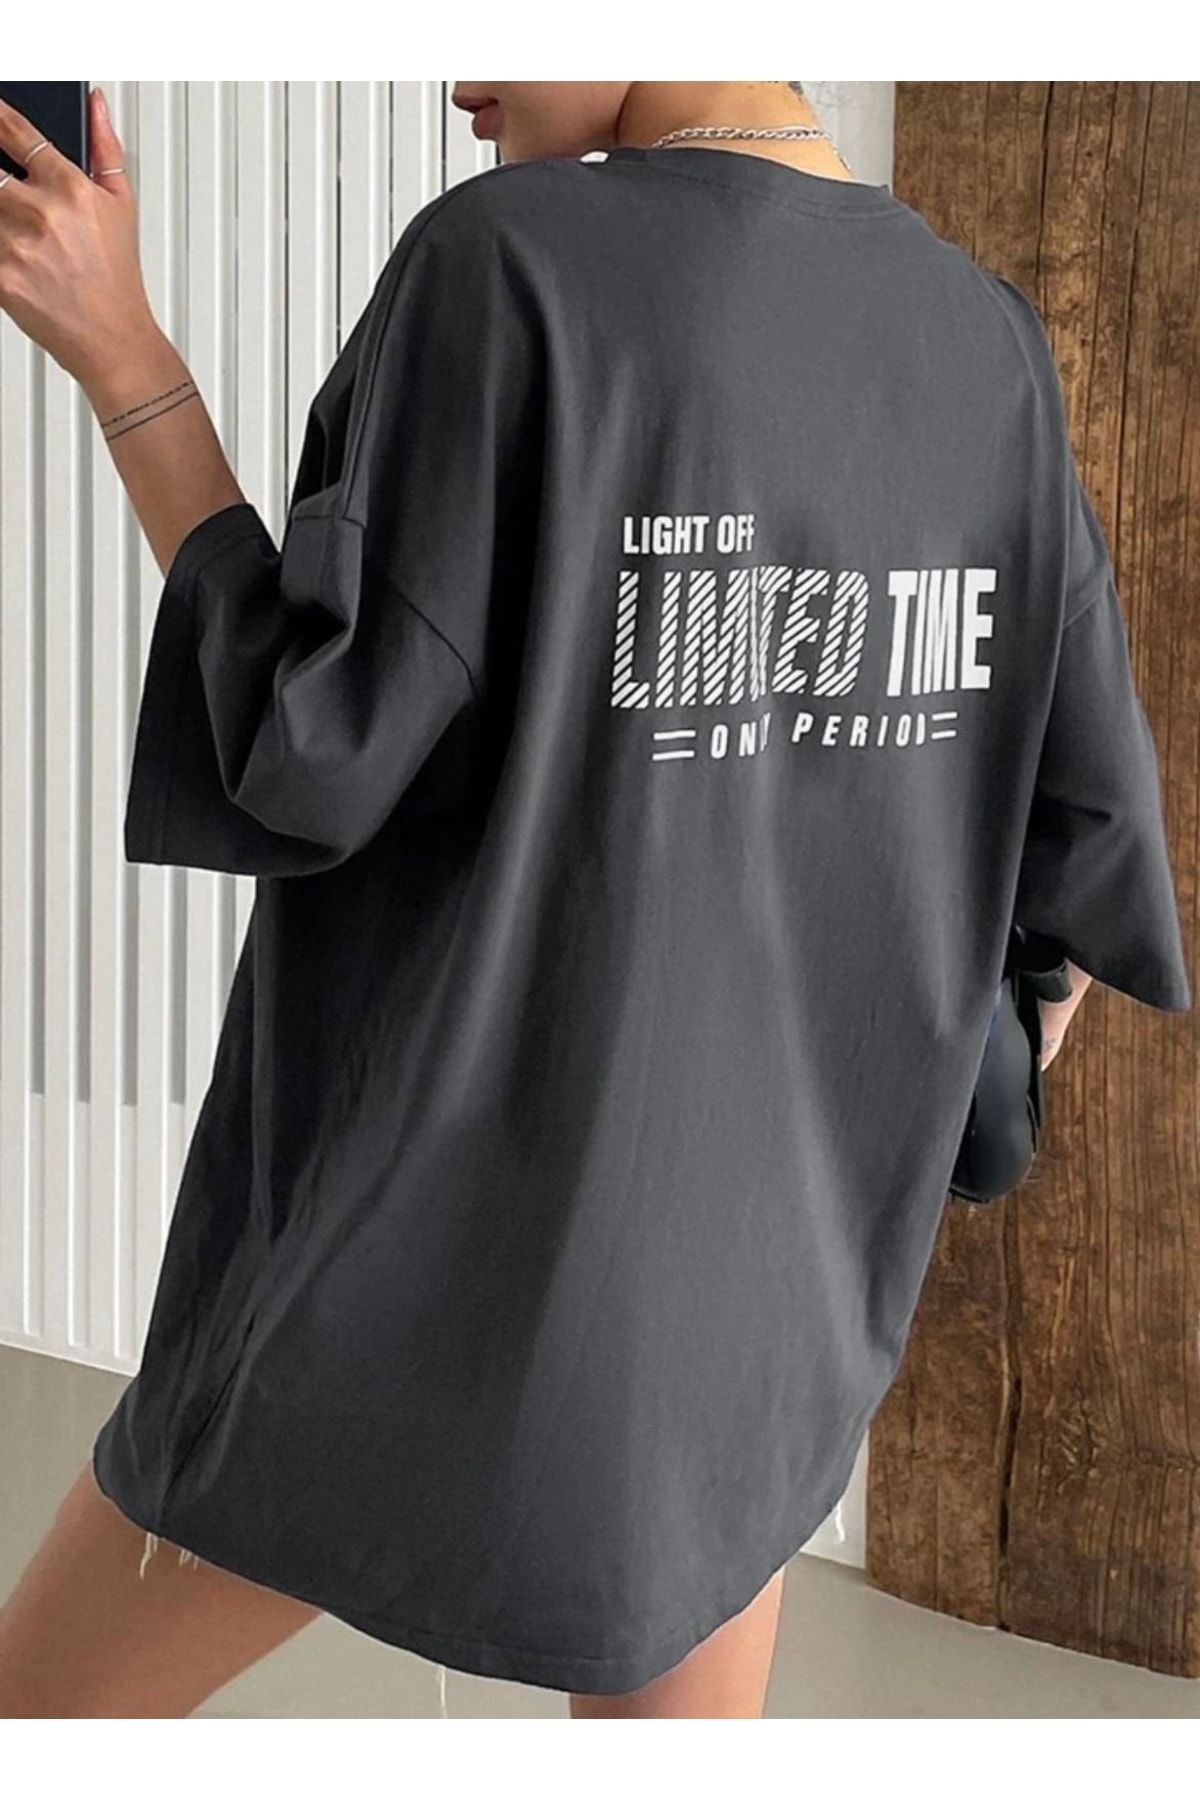 AFROGİYİM Kadın Limited Time Baskılı Oversize T-shirt